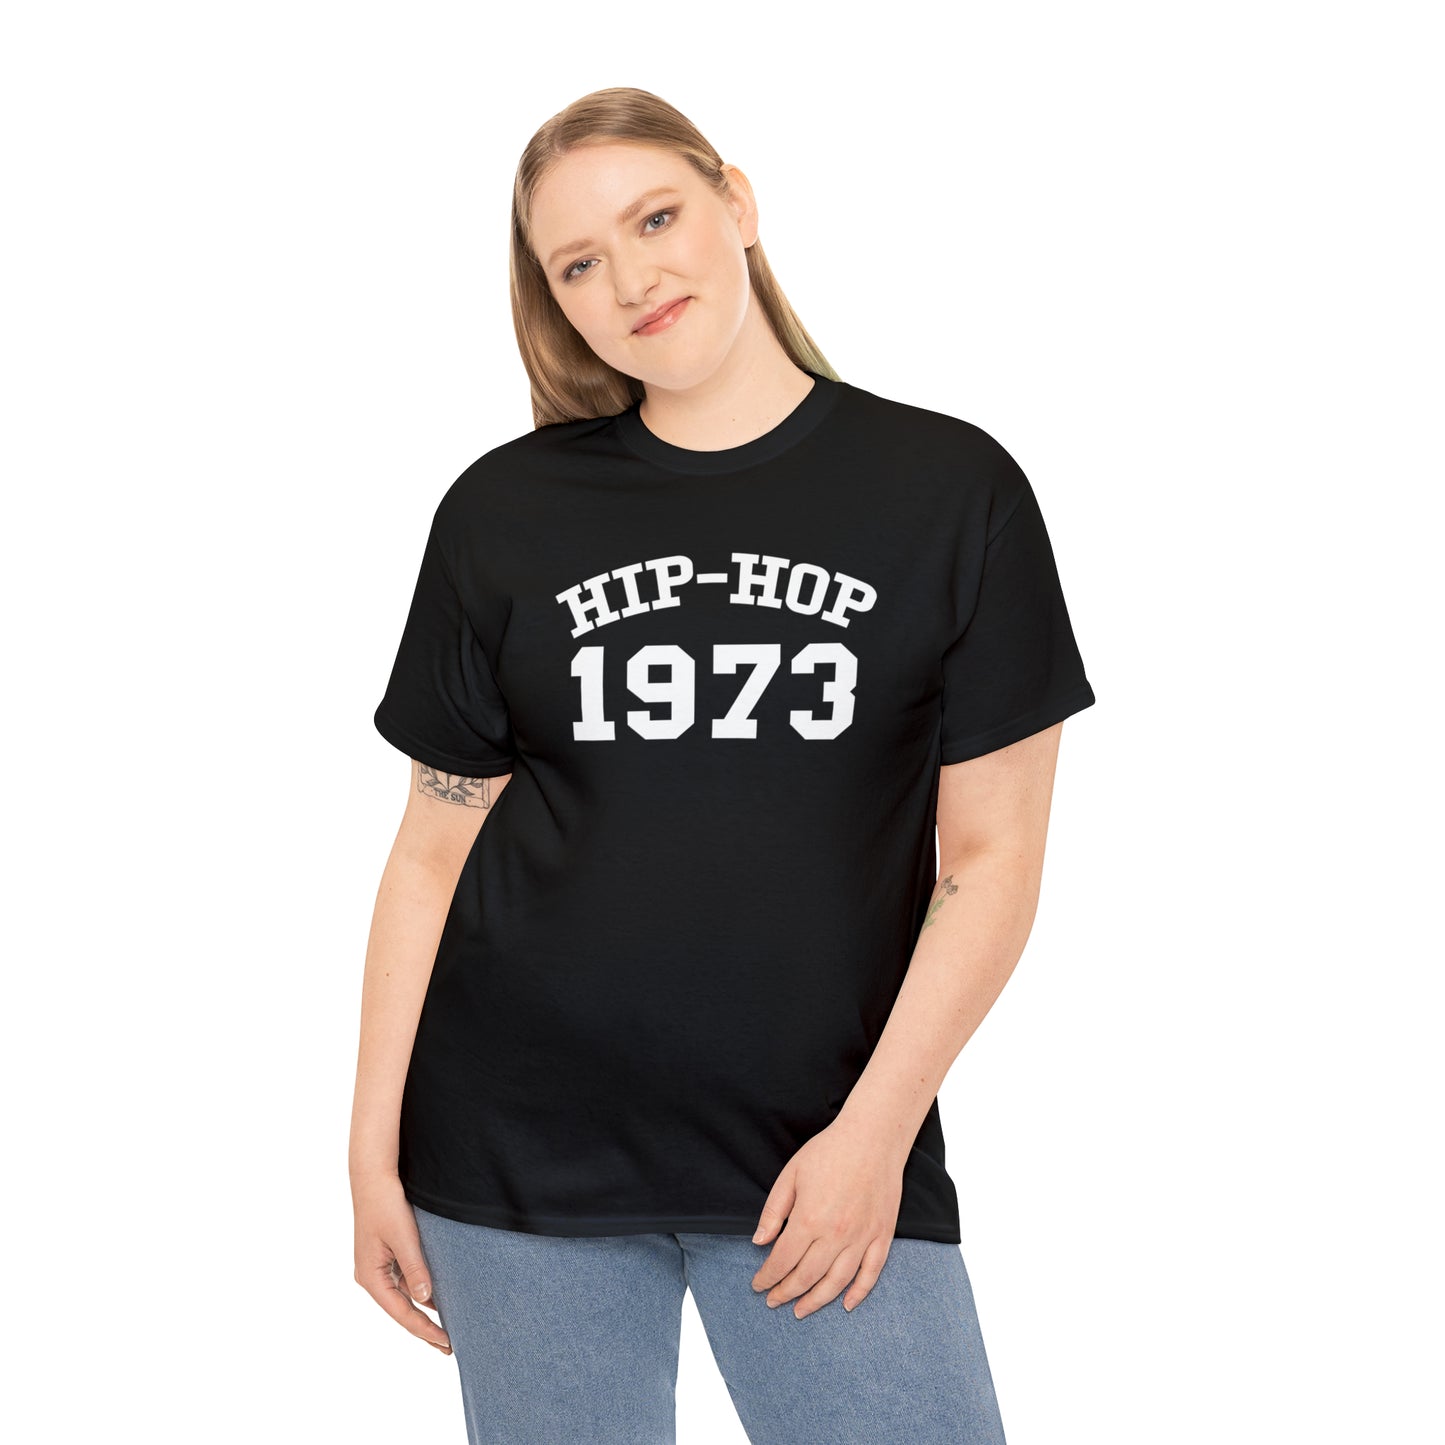 Hip-Hop 1973 T-Shirt, Hip-Hop 50 T-Shirt, Rap Music Tee, Hip-Hop 50th T-Shirt, Hip-Hop 1973 Anniversary Tee, Rap Culture Shirt, Urban Shirt